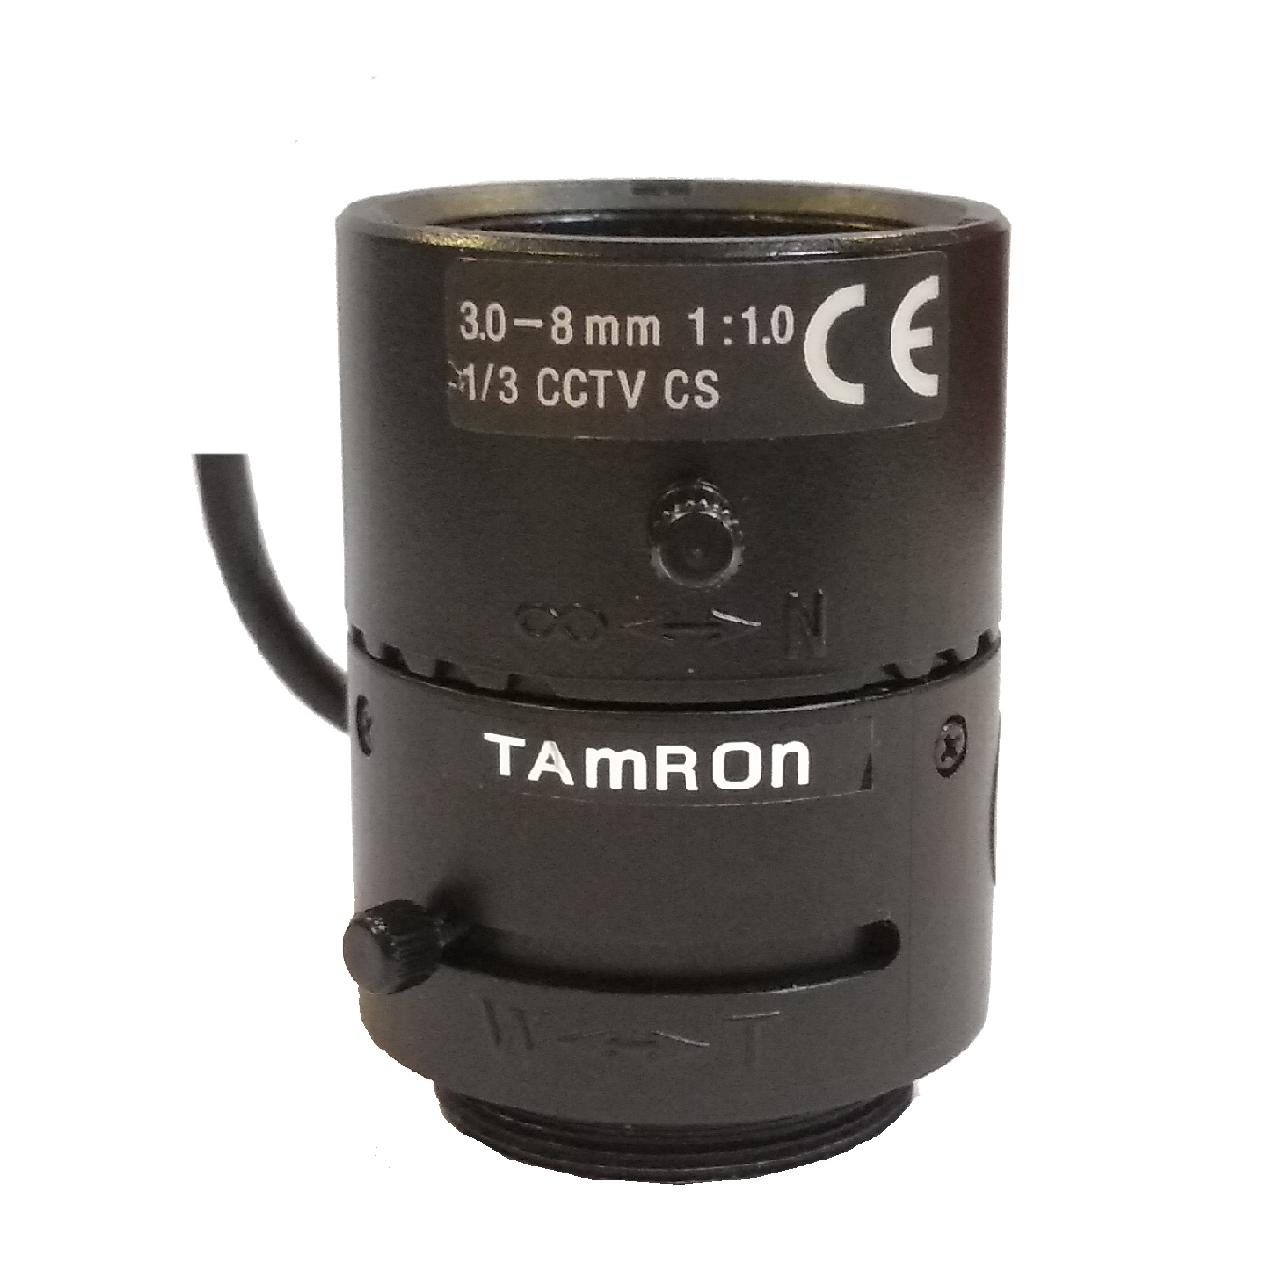 لنز وری فوکال دوربین مداربسته تامرون مدل 13VG308AS